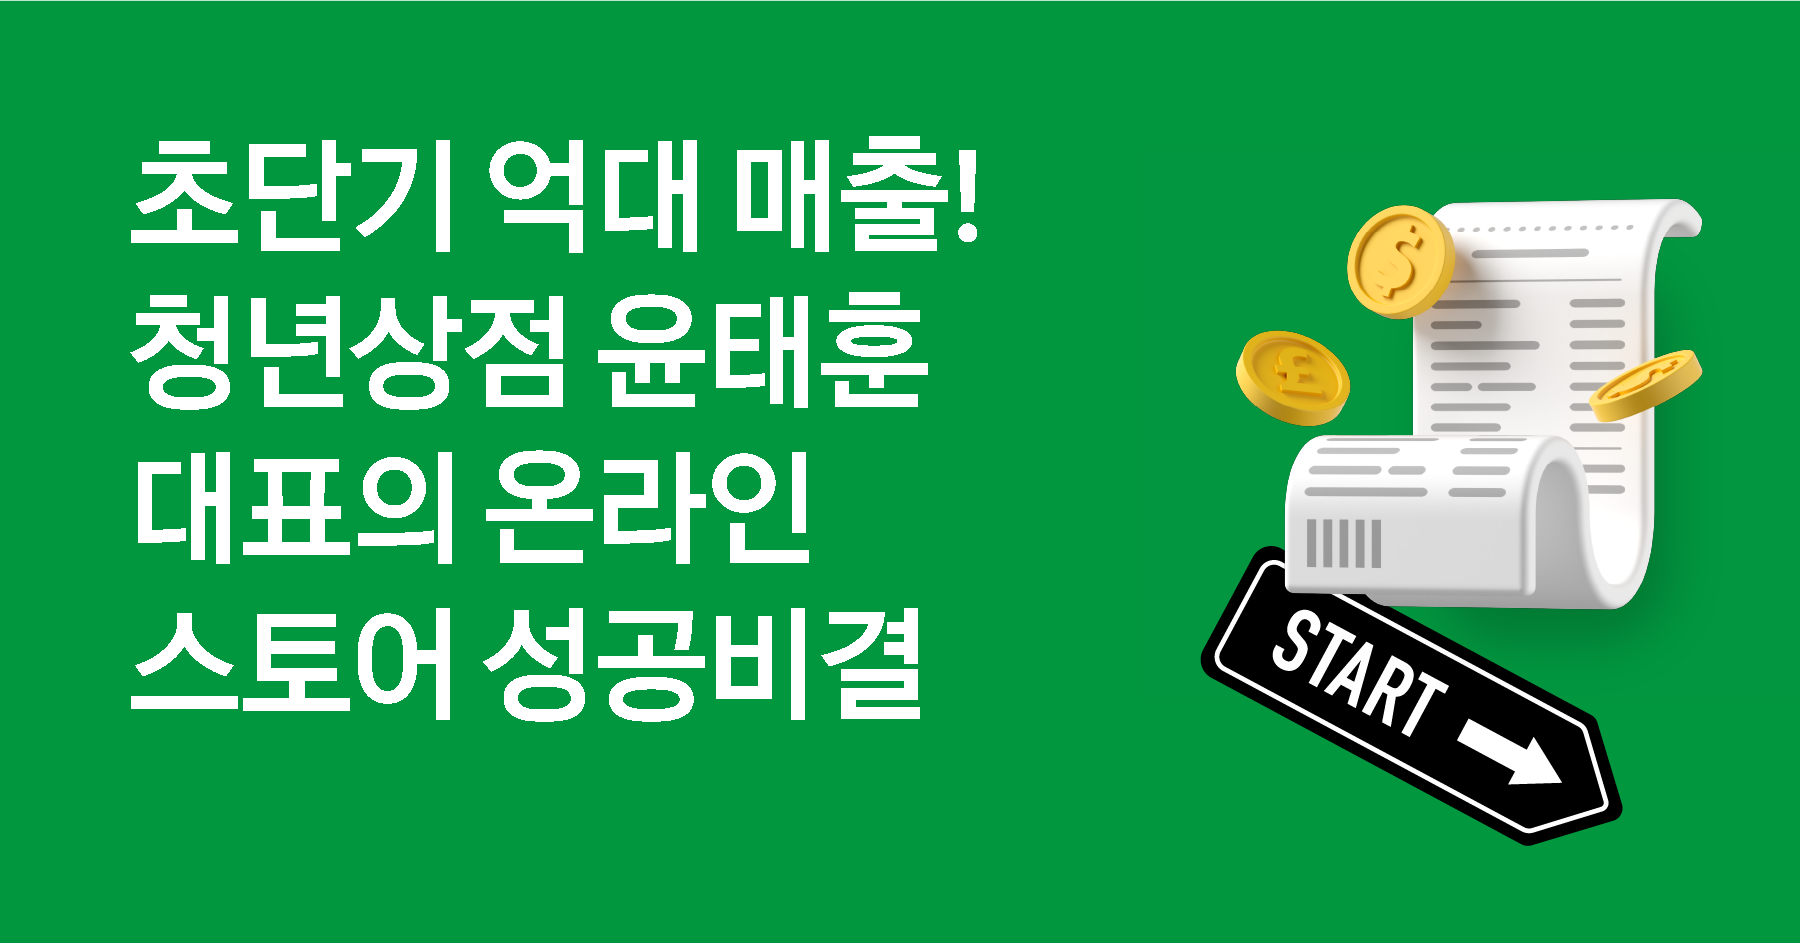 온라인쇼핑몰 억대 매출 성공사례 공개